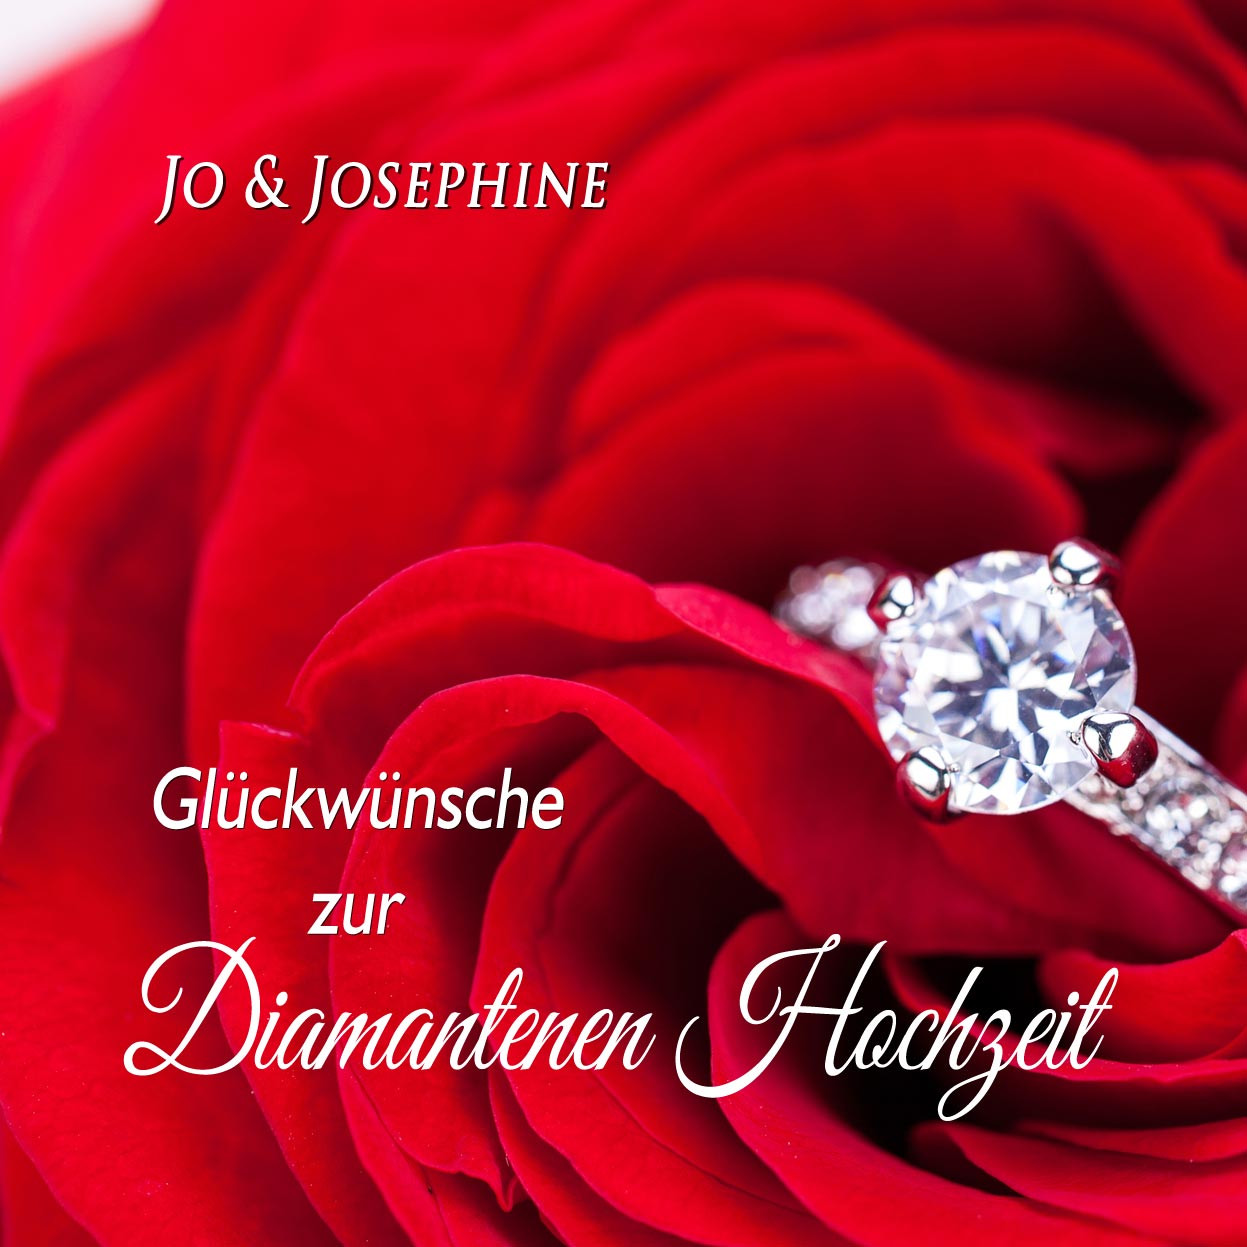 Diamantene Hochzeit Glückwünsche
 "Glückwünsche zur Diamantenen Hochzeit" Lied als MP3